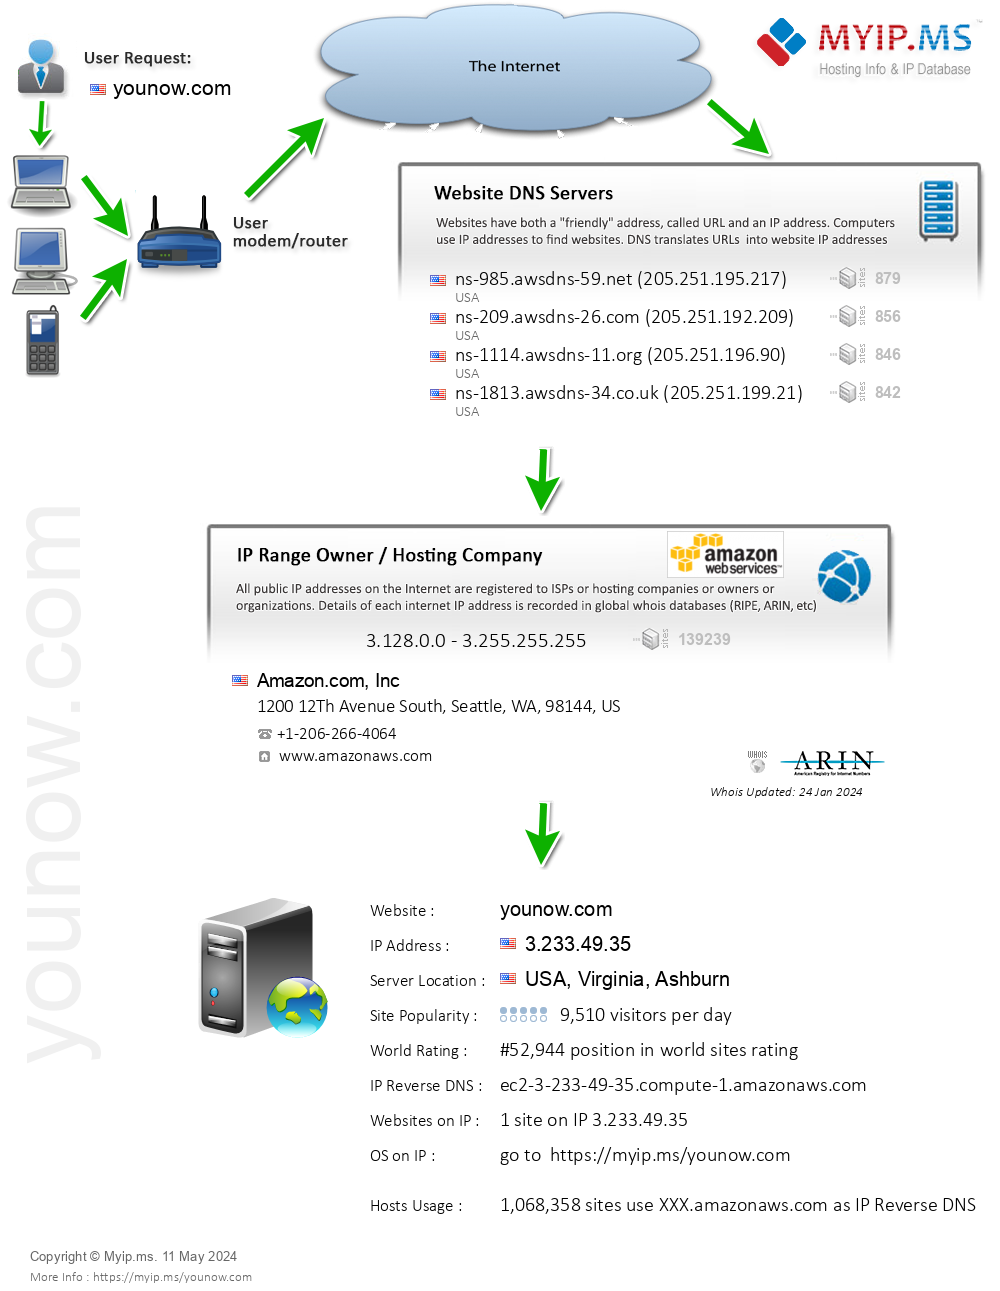 Younow.com - Website Hosting Visual IP Diagram